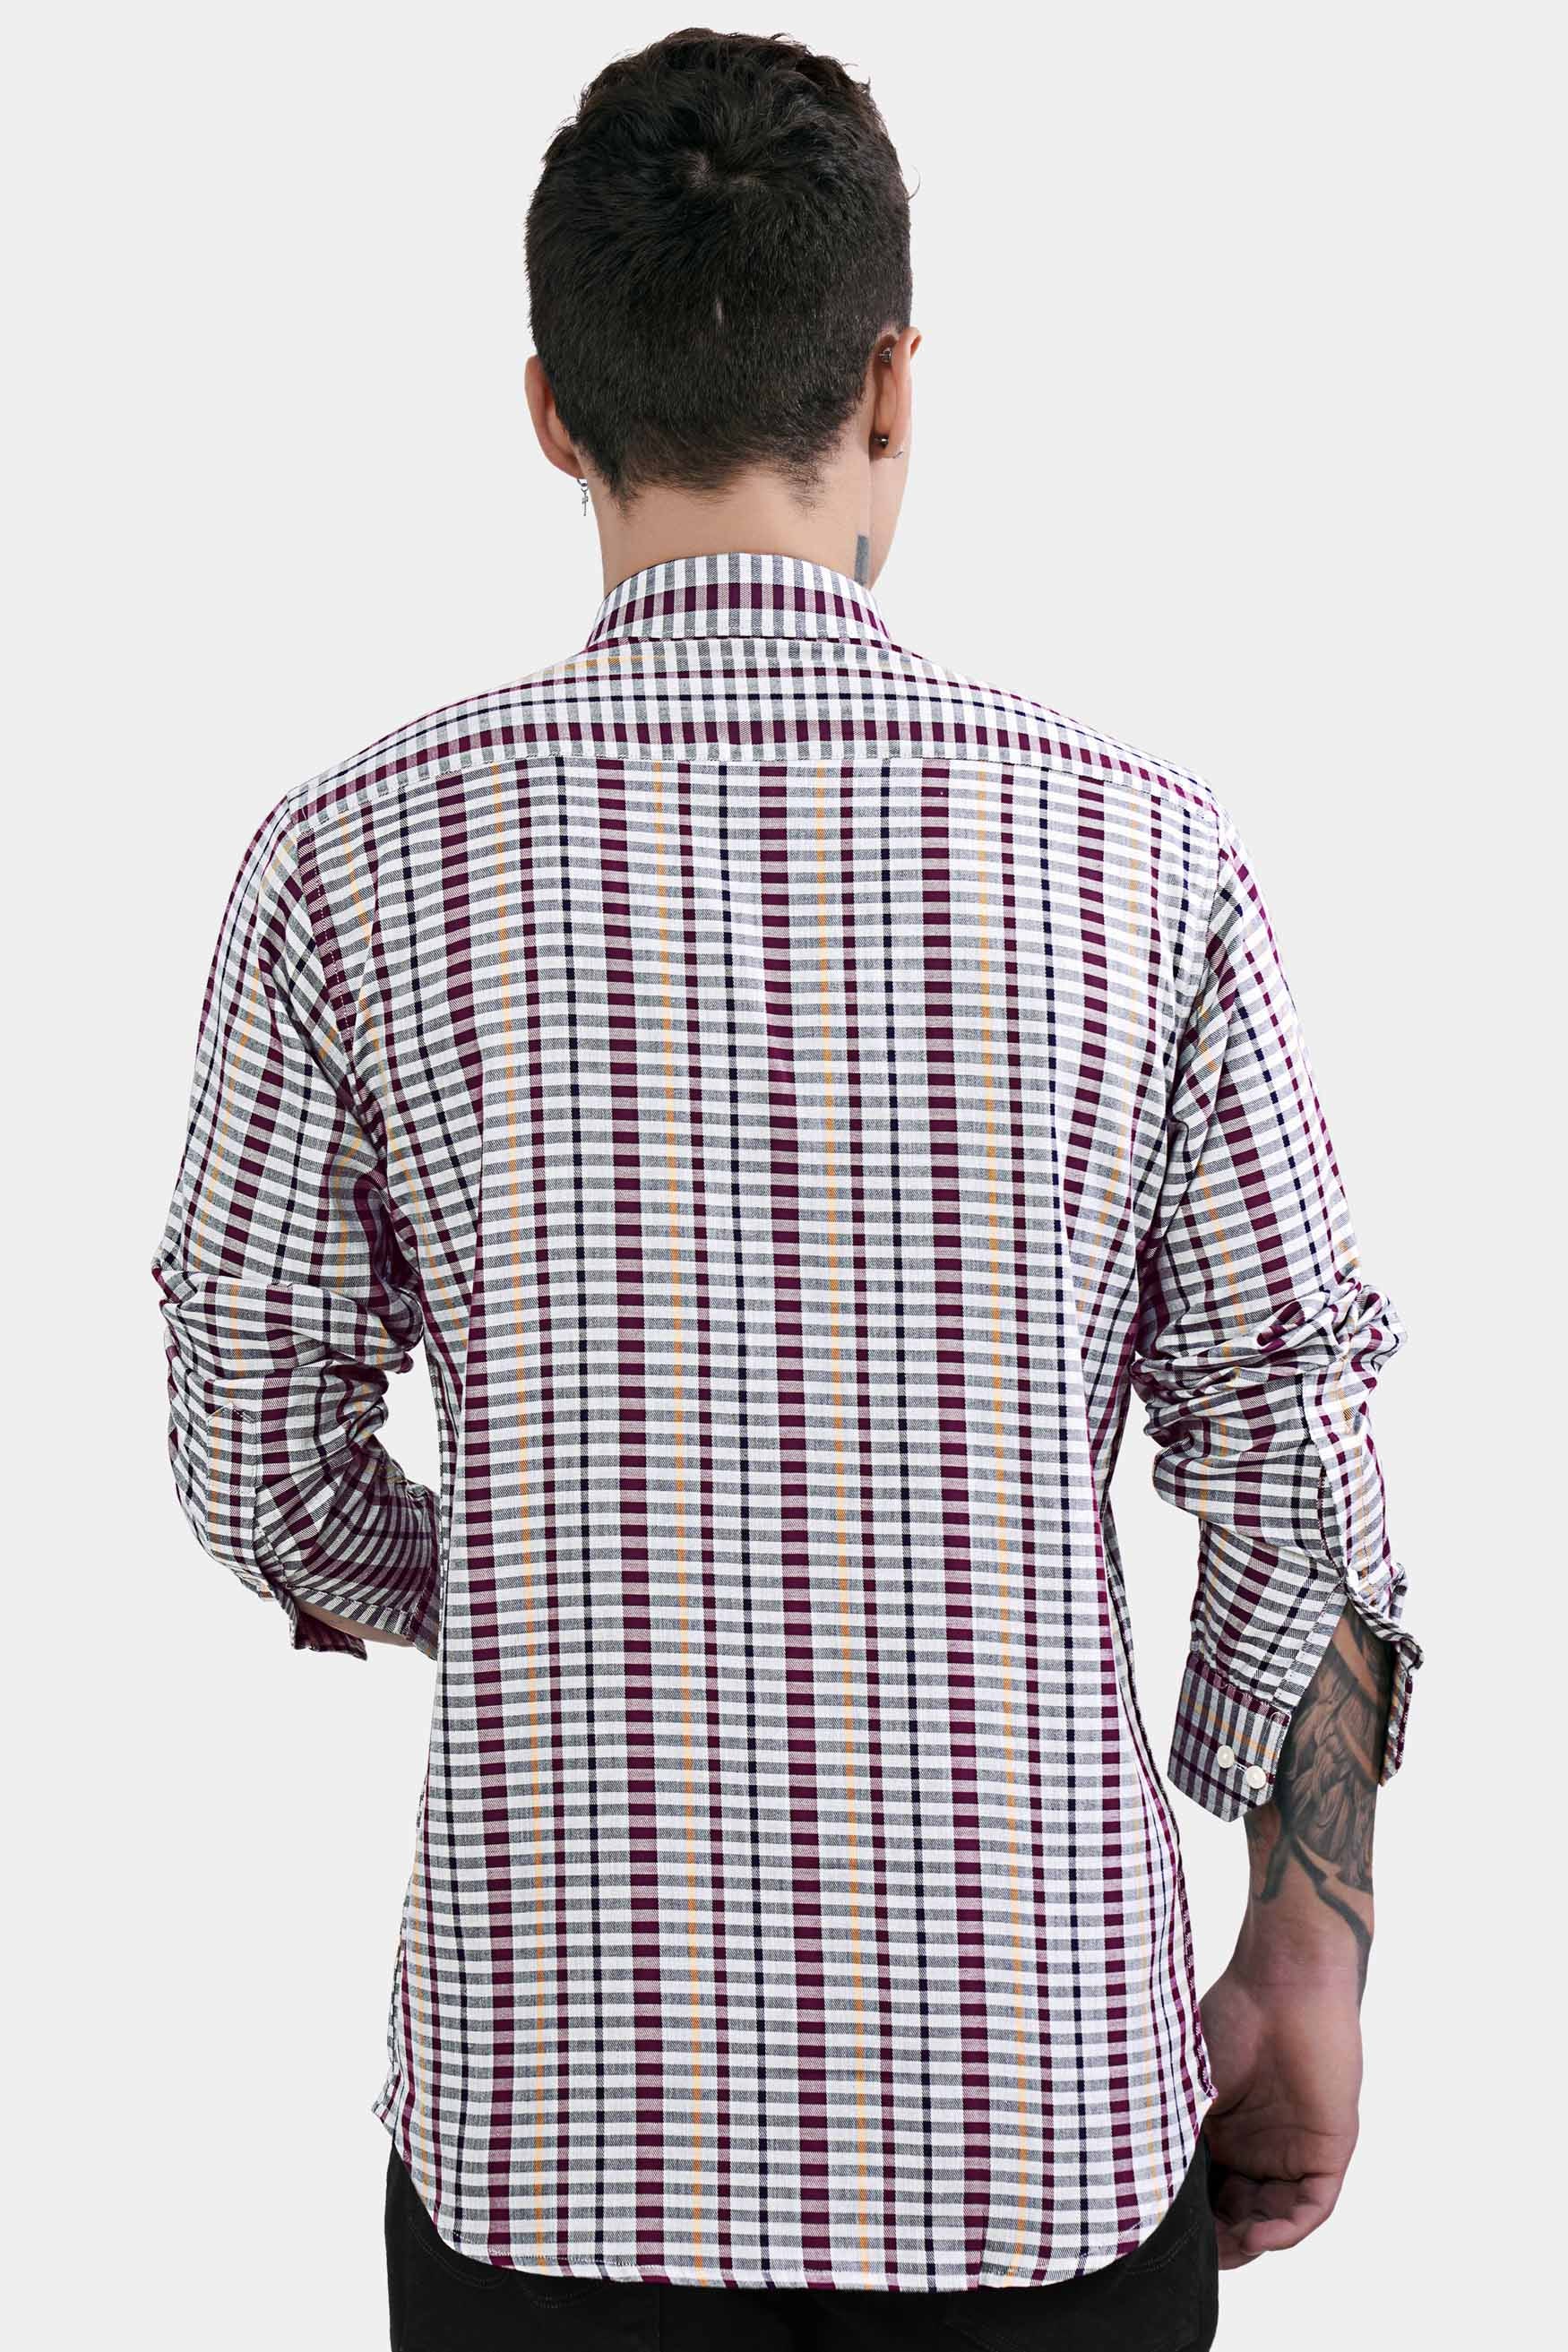 Nickel Gray and Tamarind Maroon Twill Checkered Premium Cotton Shirt